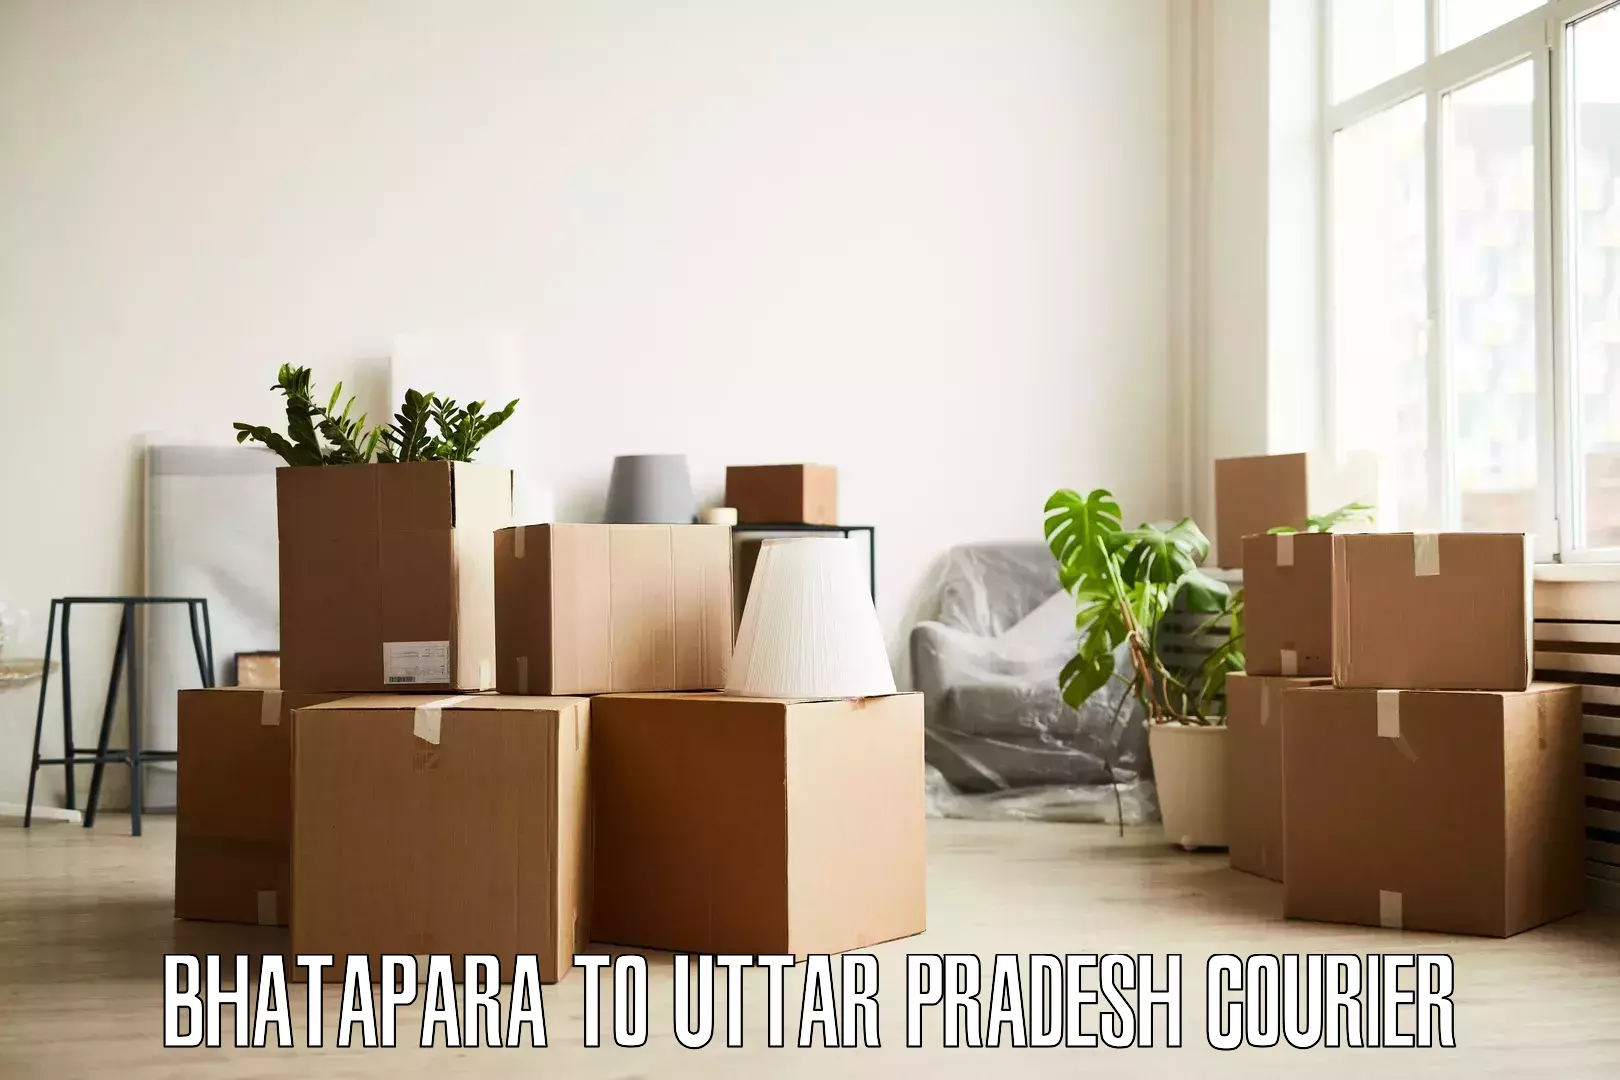 Residential moving experts Bhatapara to Sahatwar